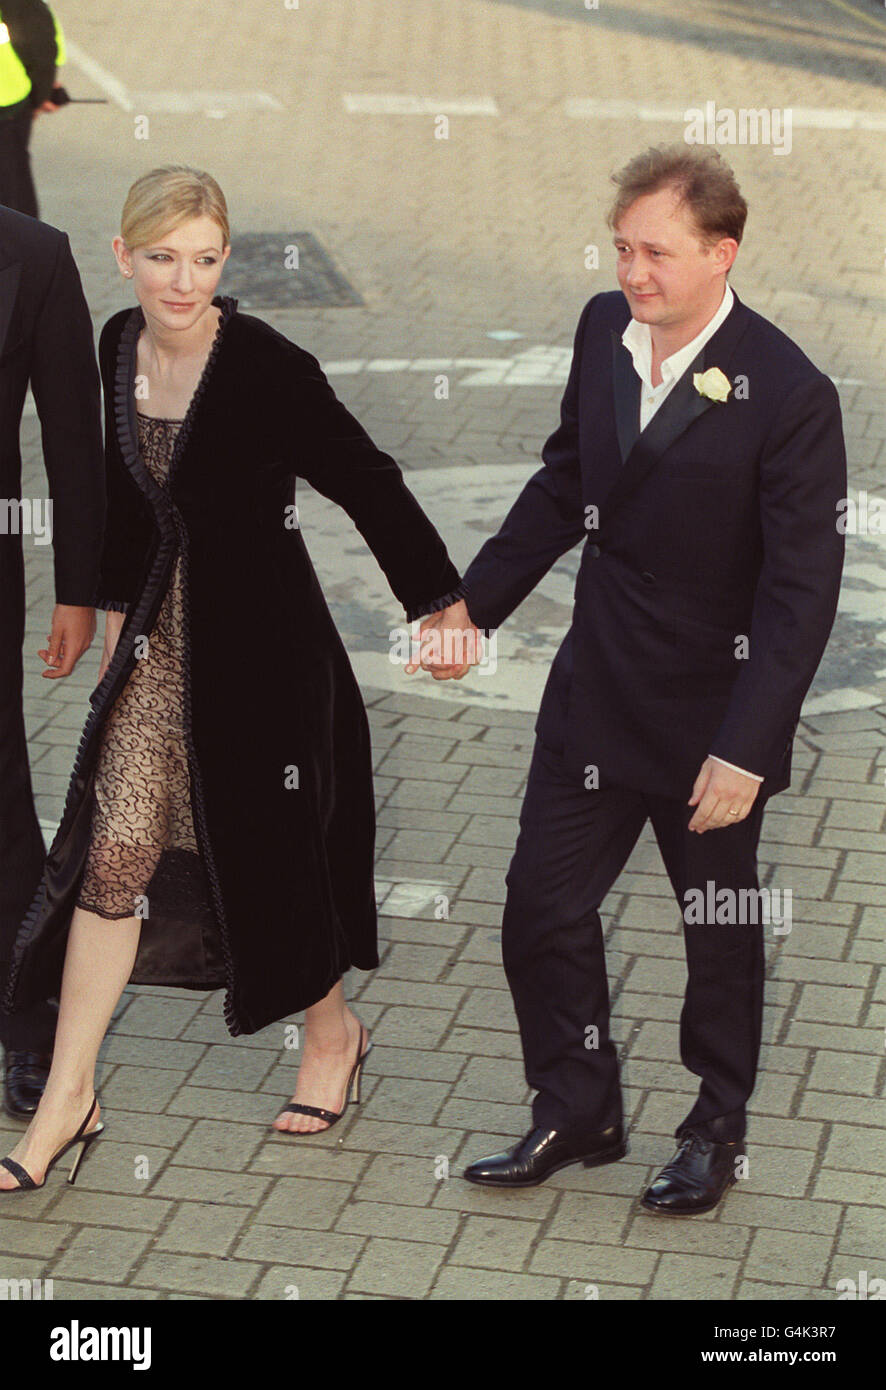 L'actrice Cate Blanchett et son mari Andrew Upton, scénariste, arrivent aux 51e BAFTA film Awards au Business Design Center de Londres. Banque D'Images